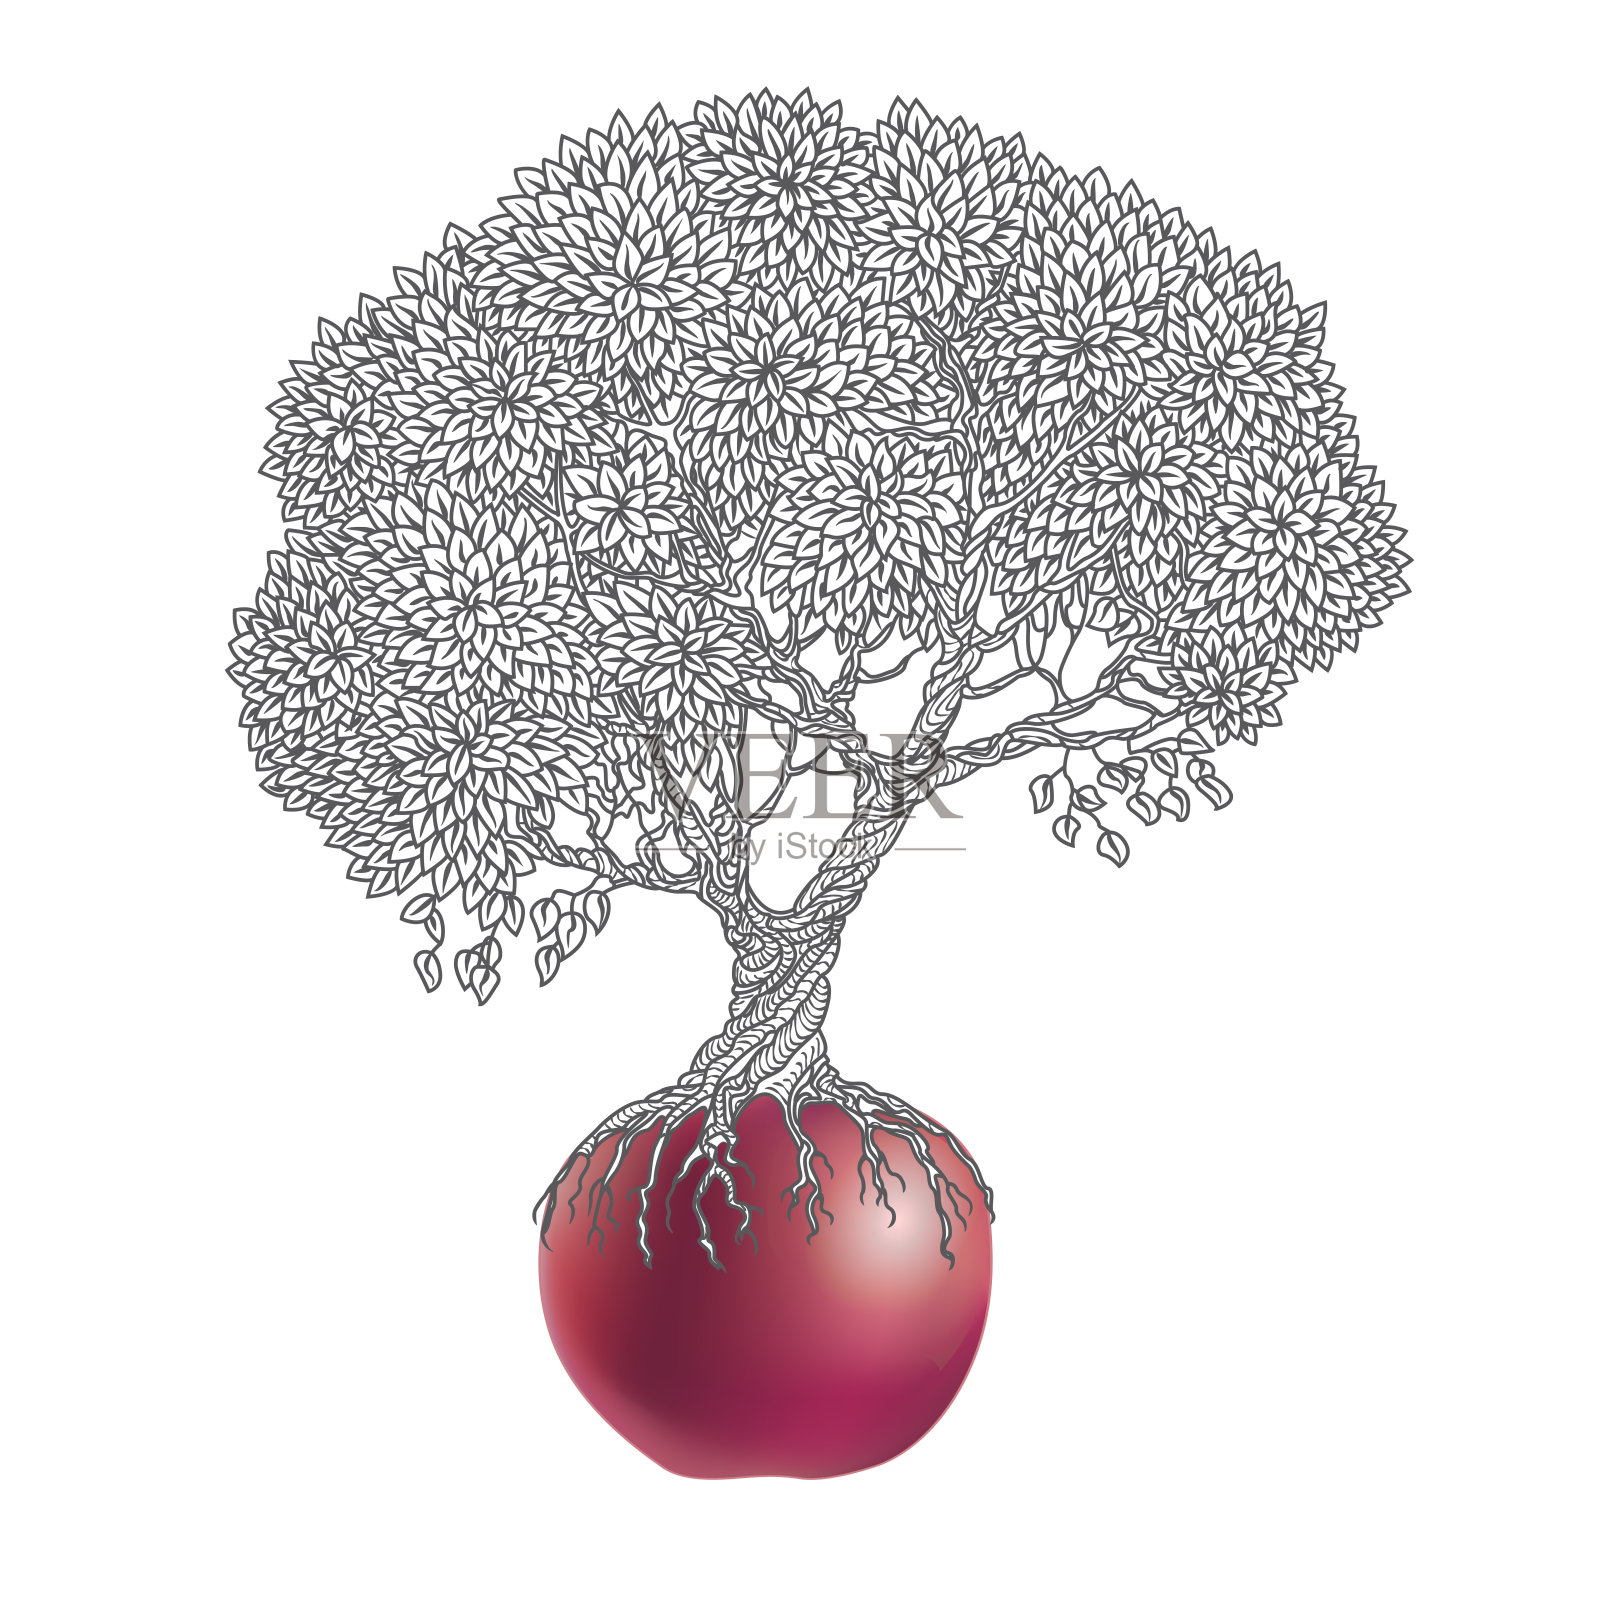 向量插图的老苹果树生长出一个红色的苹果孤立在一个白色的背景插画图片素材